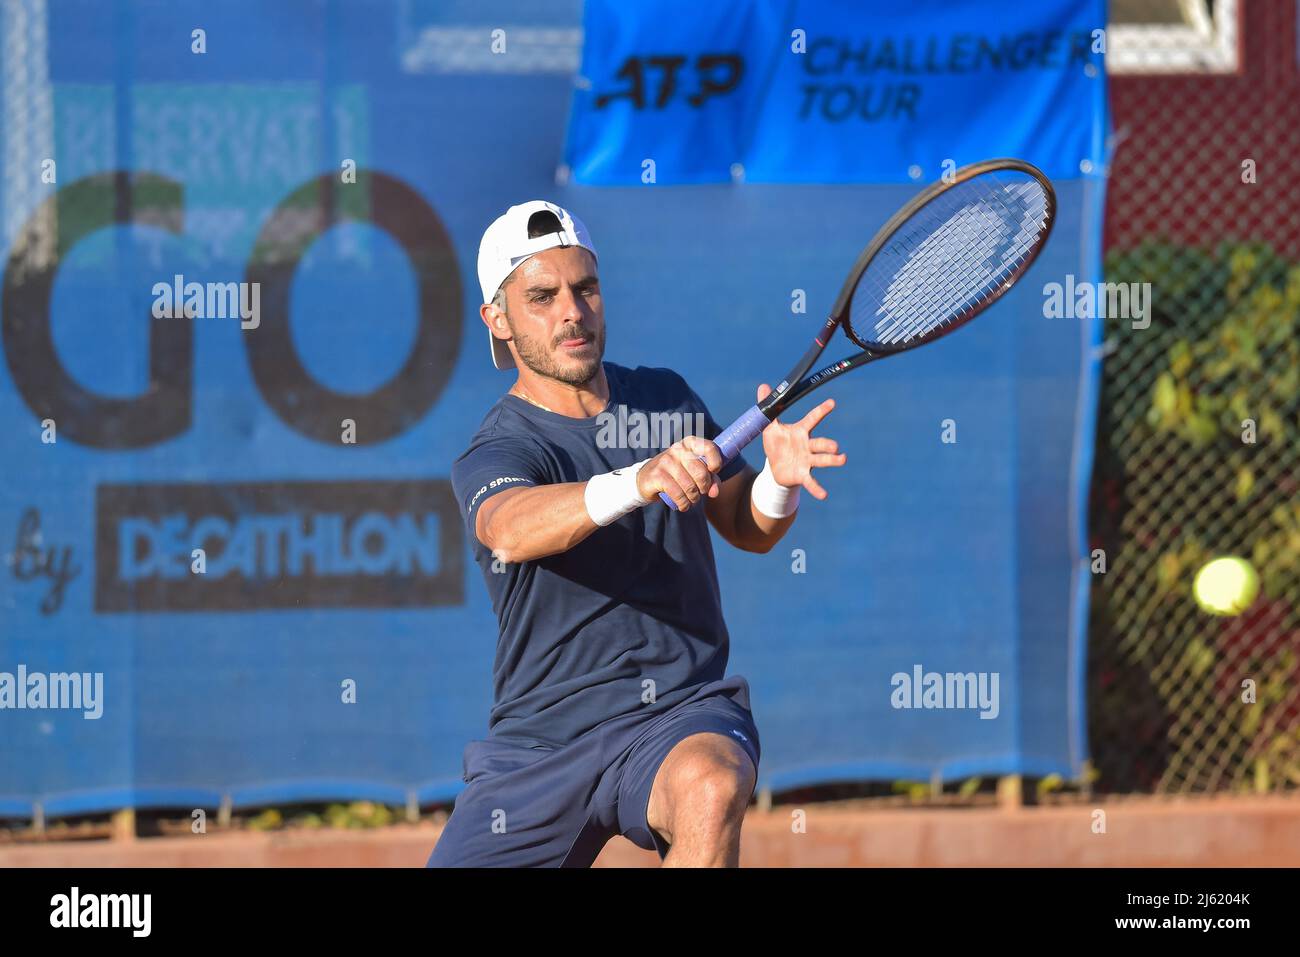 26 de abril de 2022, Roma, Italia: Thomas Fabbiano (ITA) durante la ronda  de torneos de tenis ATP Challenger Roma Open de 32 en el Club de Tenis  Jardín el 26 de